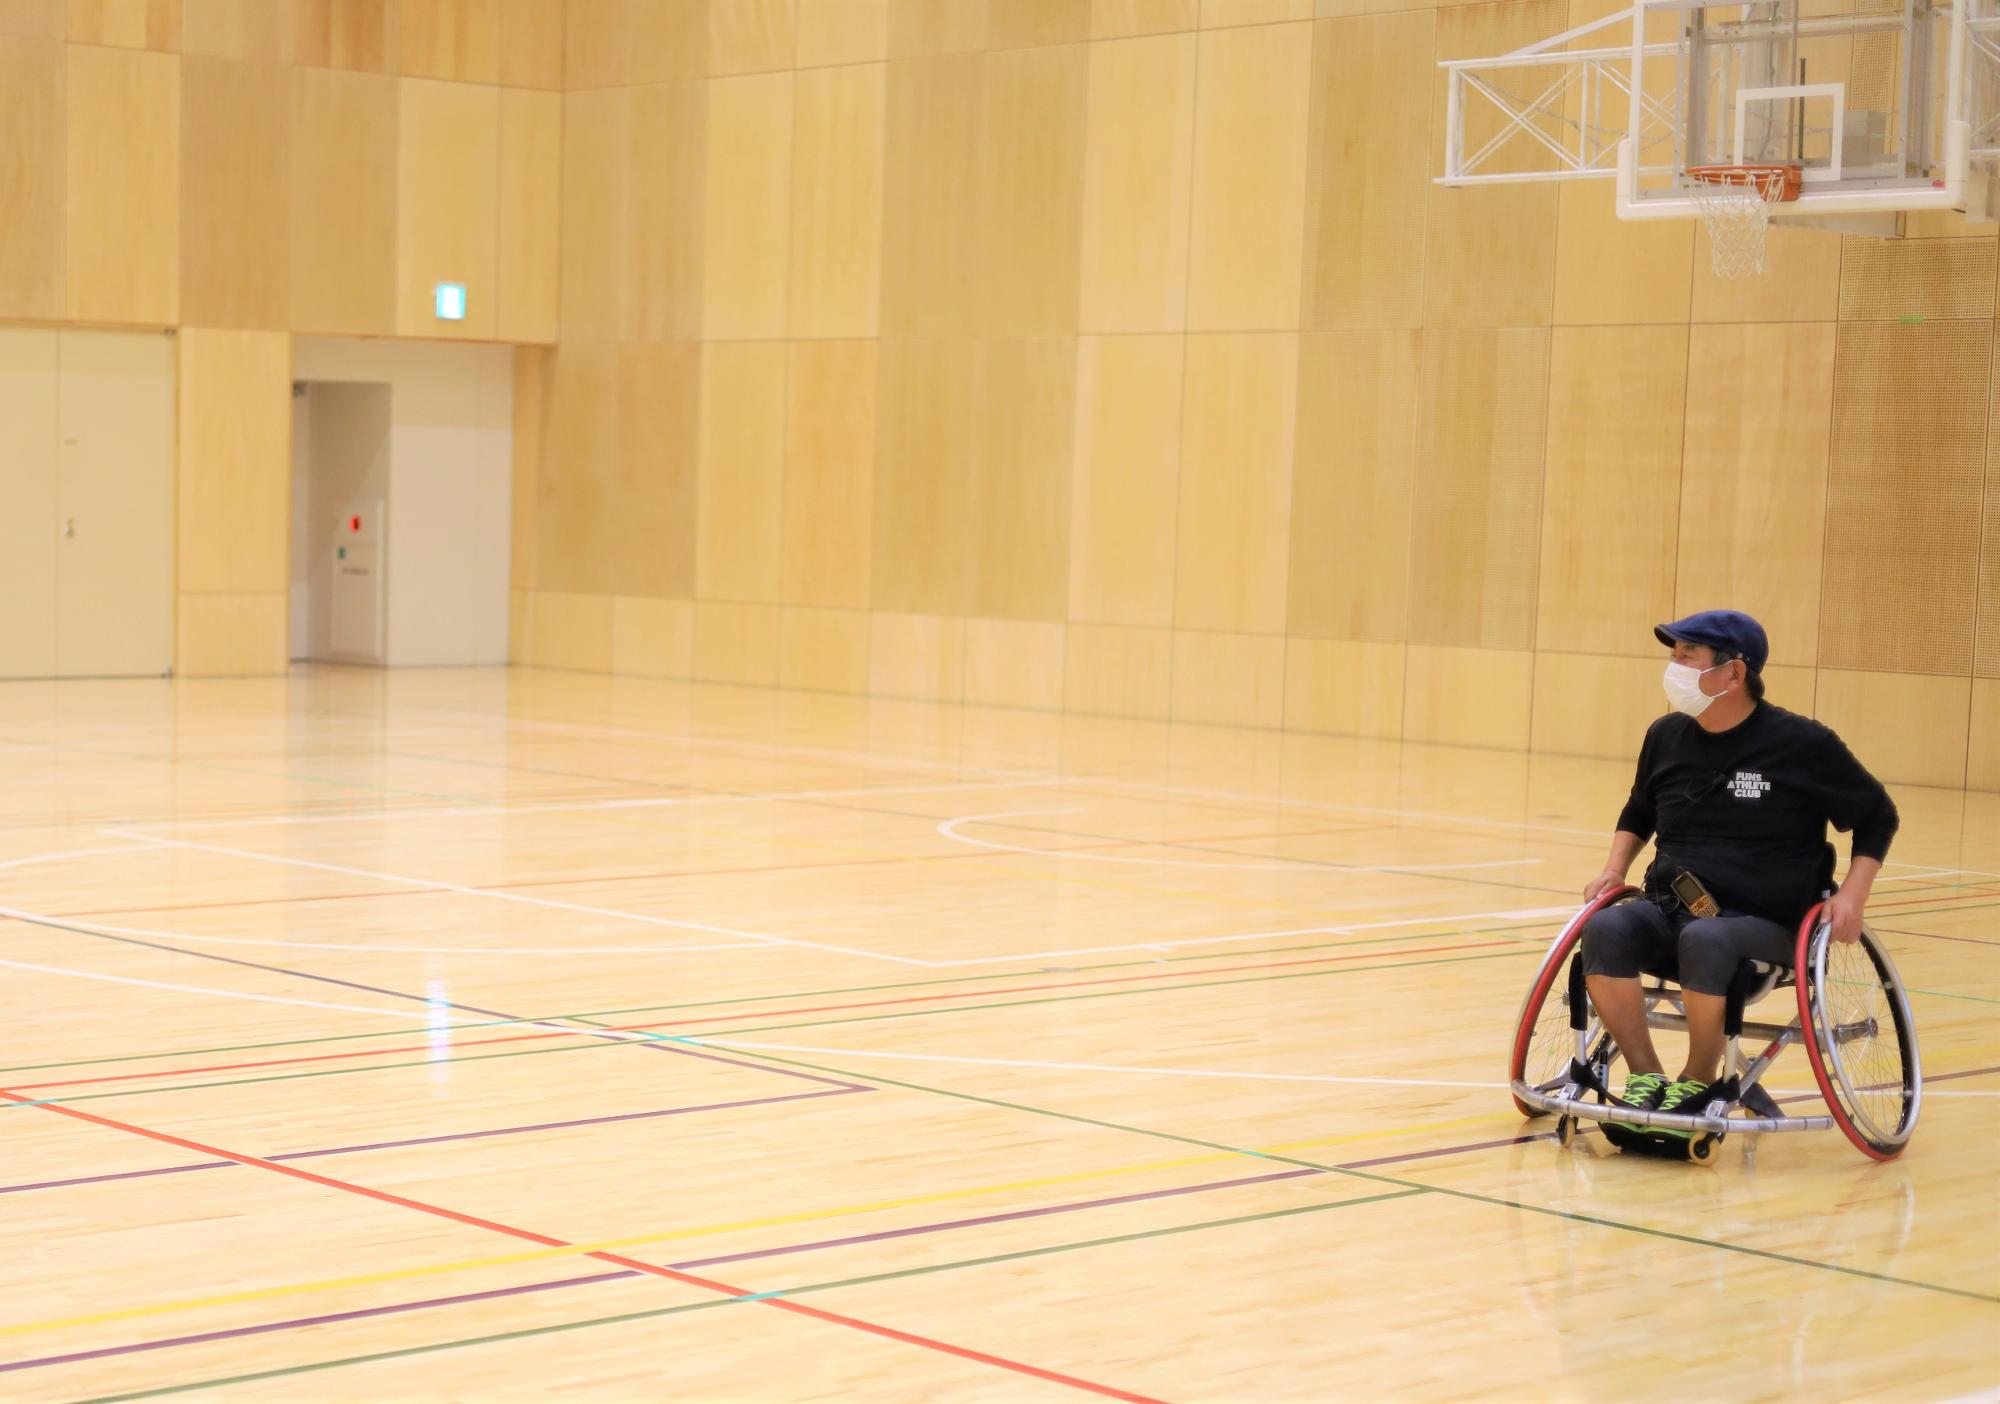 他の参加者に交じって一緒に車椅子スポーツを楽しむ井上さん。障がい者スポーツを身近な存在にするために今回のイベントを企画した。